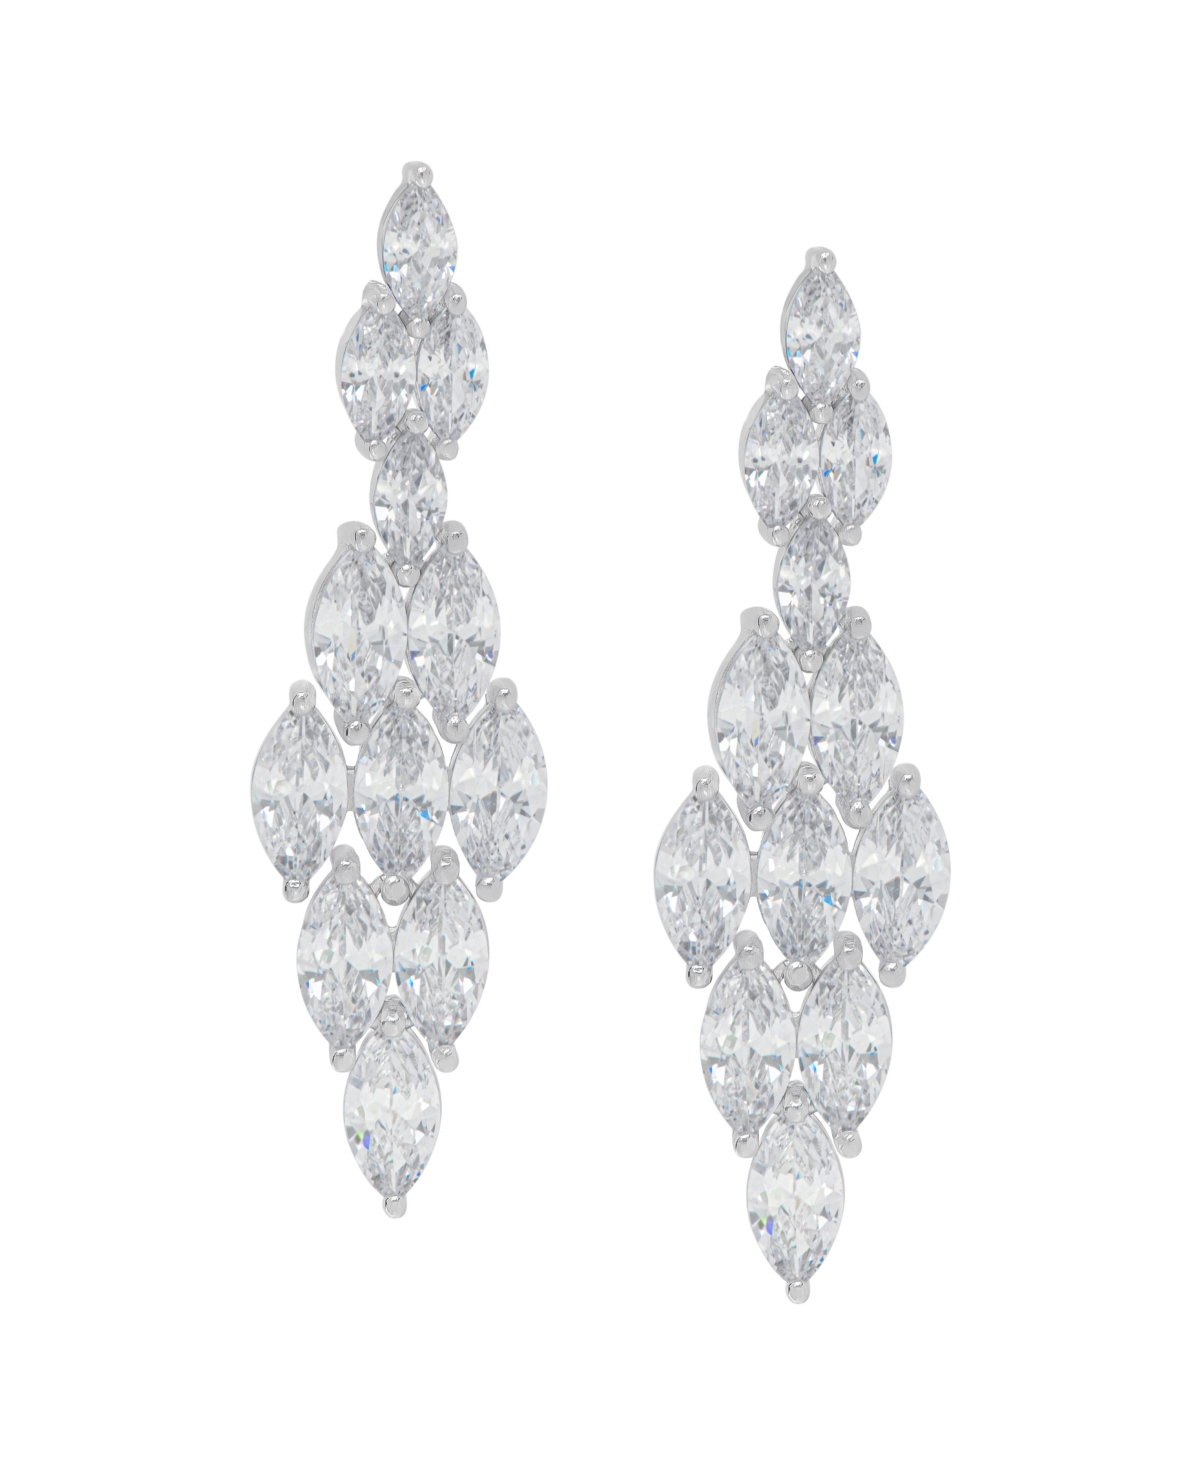 Macy's Fine Silver Plated Cubic Zirconia Chandelier Earrings